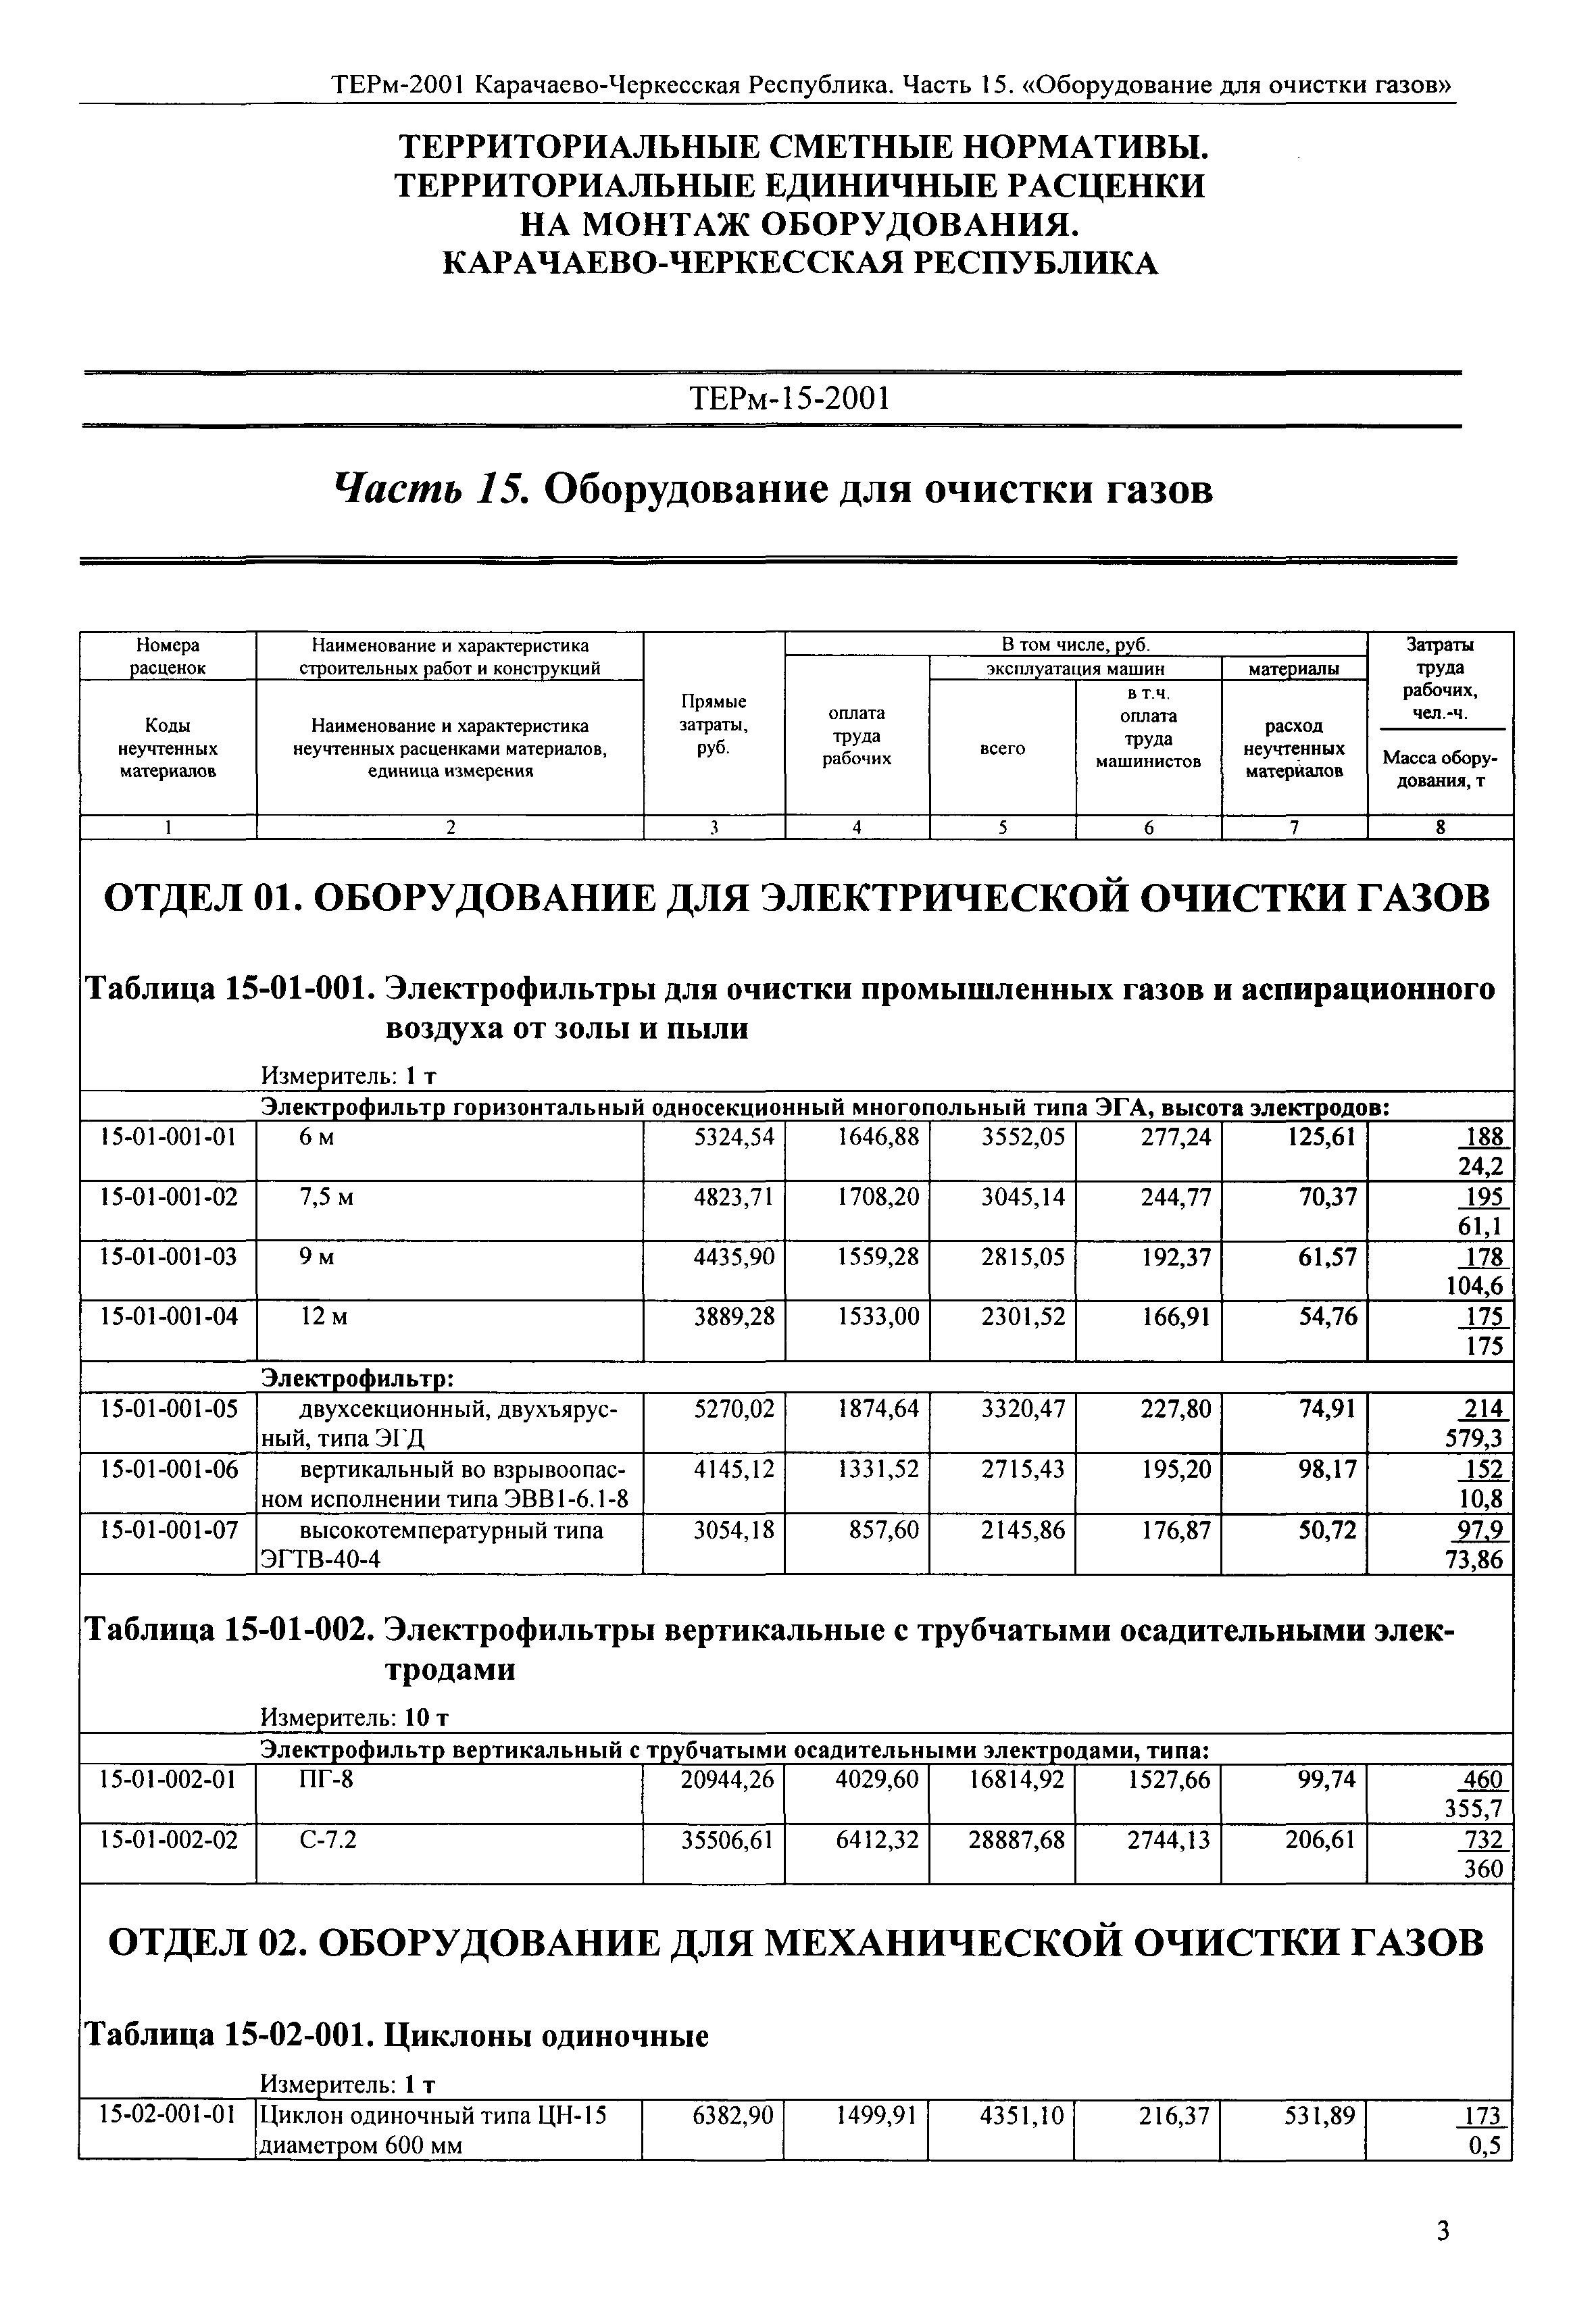 ТЕРм Карачаево-Черкесская Республика 15-2001